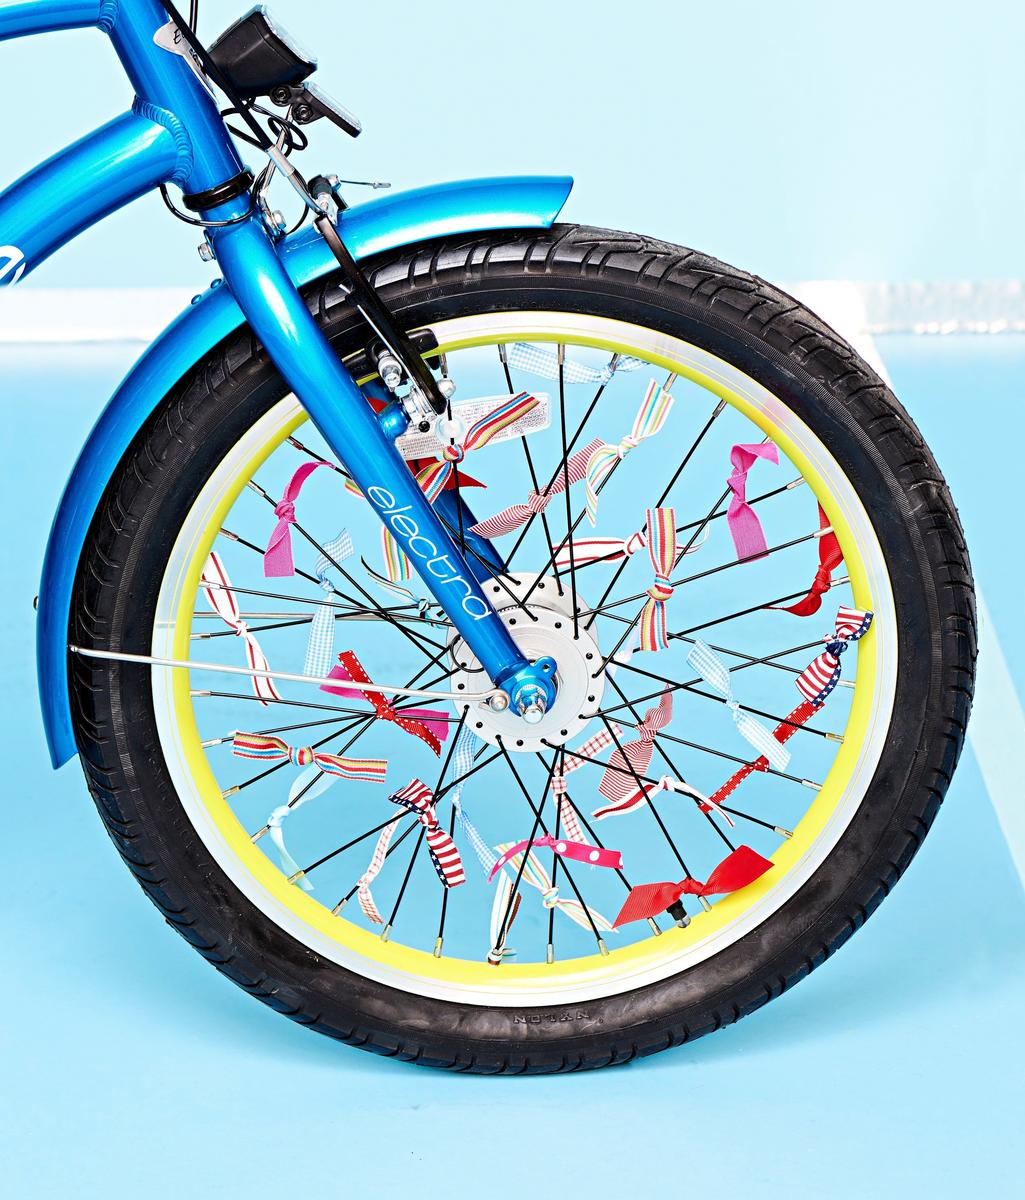 Bänder an den Speichen des blauen Fahrrads befestigt